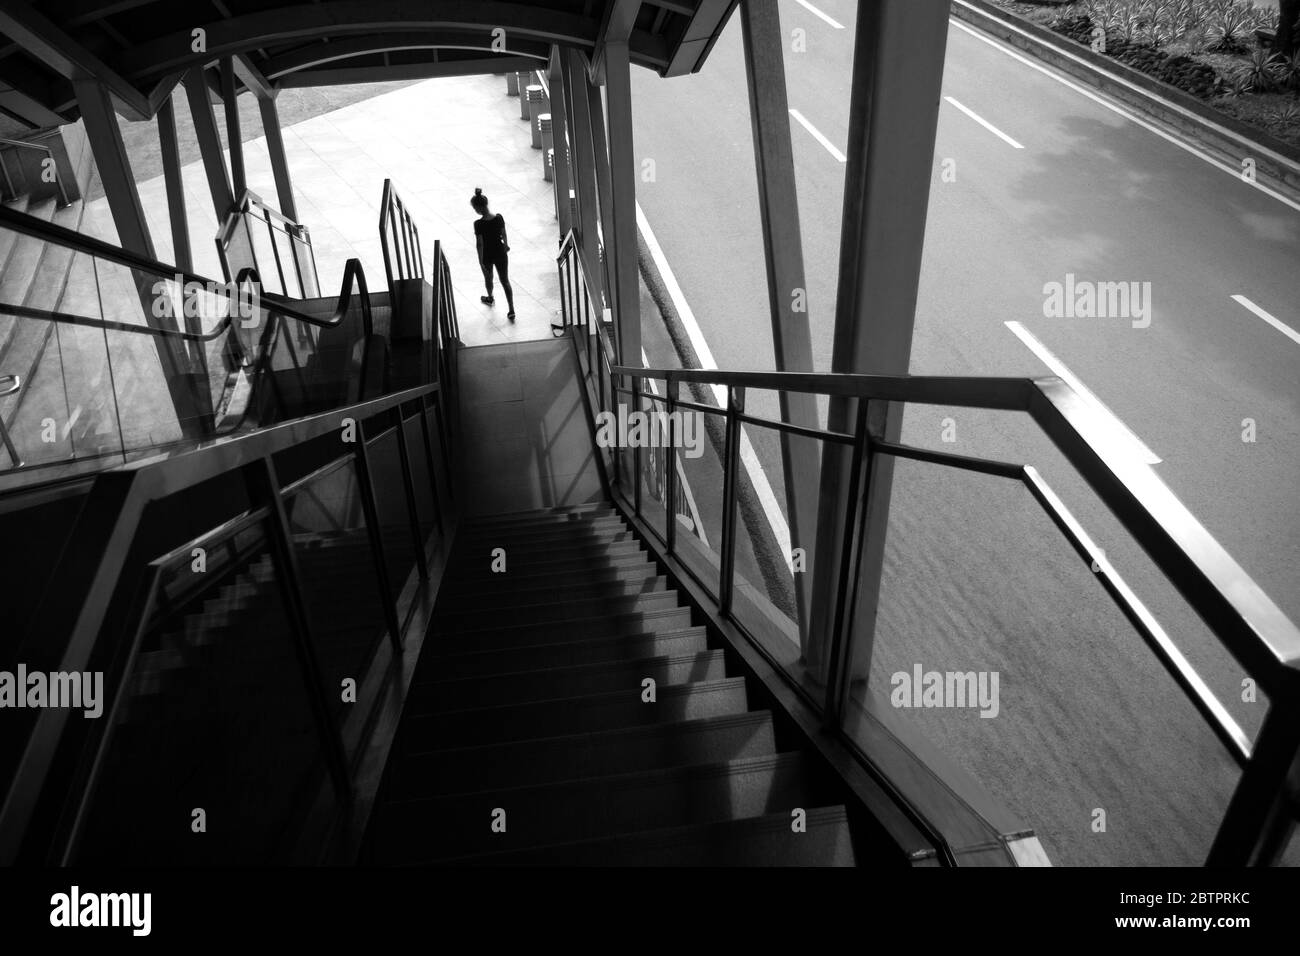 Silueta de mujer caminando por las escaleras, en blanco y negro. Concepto de soledad, depresión o ansiedad Foto de stock